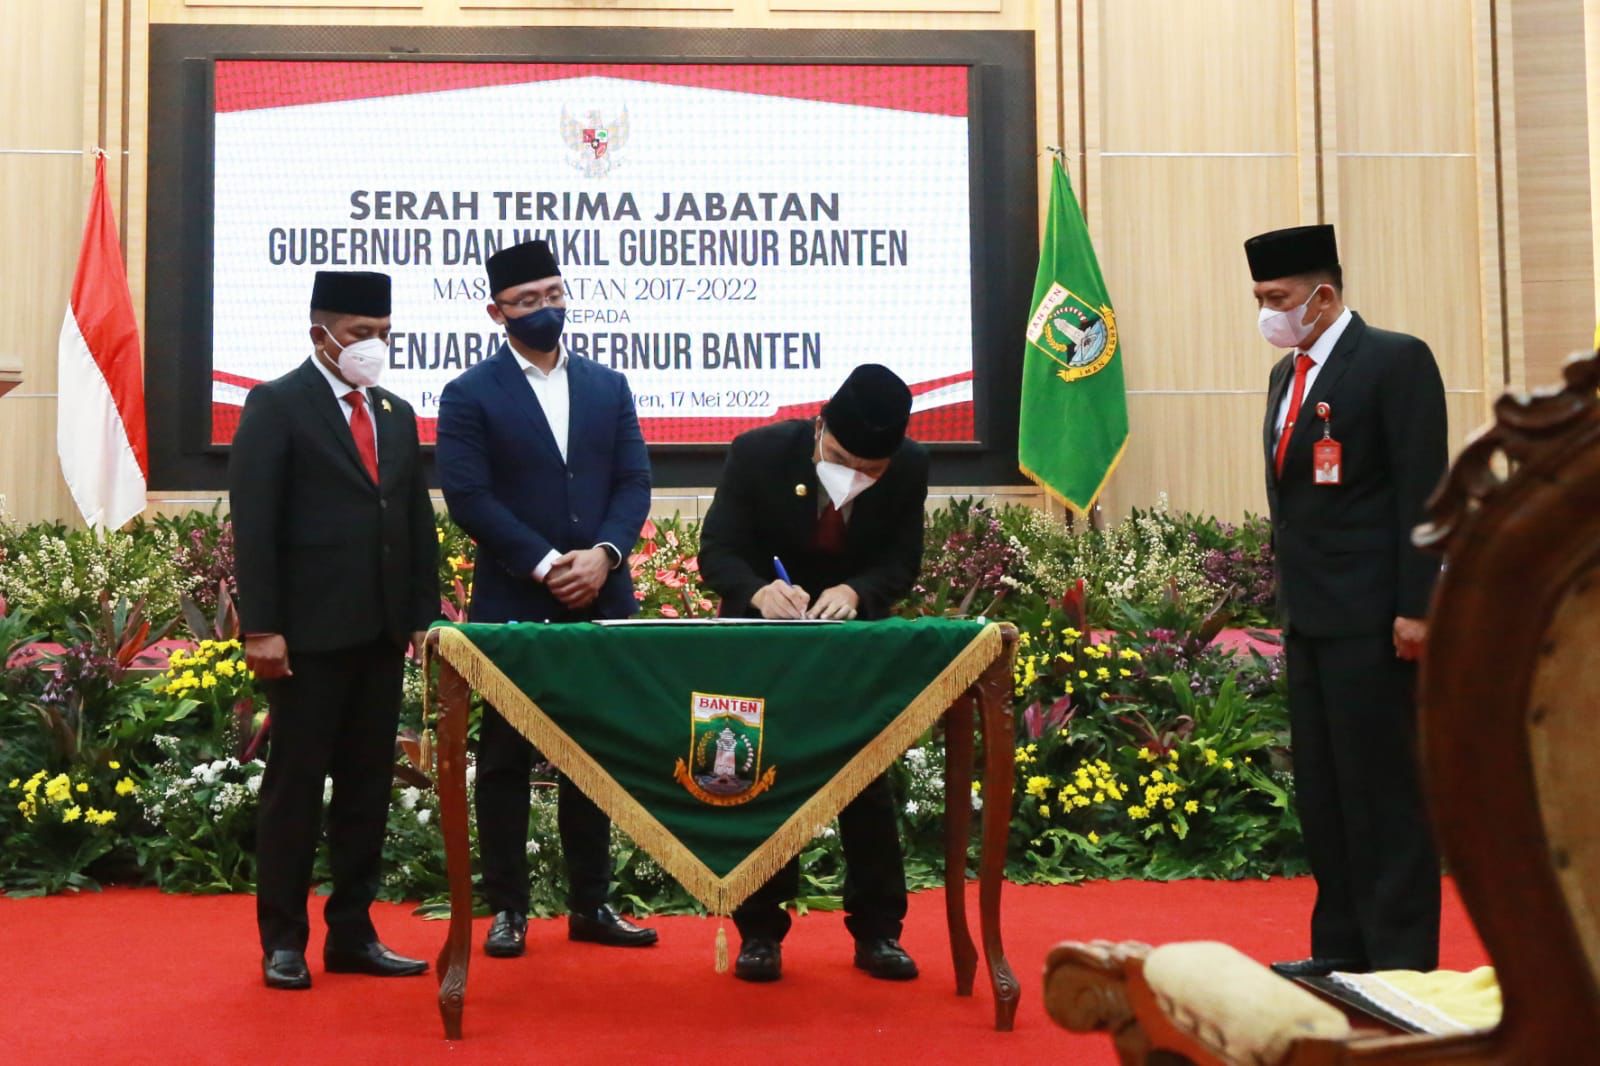 Sertijab Gubernur Banten ke PJ Gubernur Tanpa Wahidin Halim